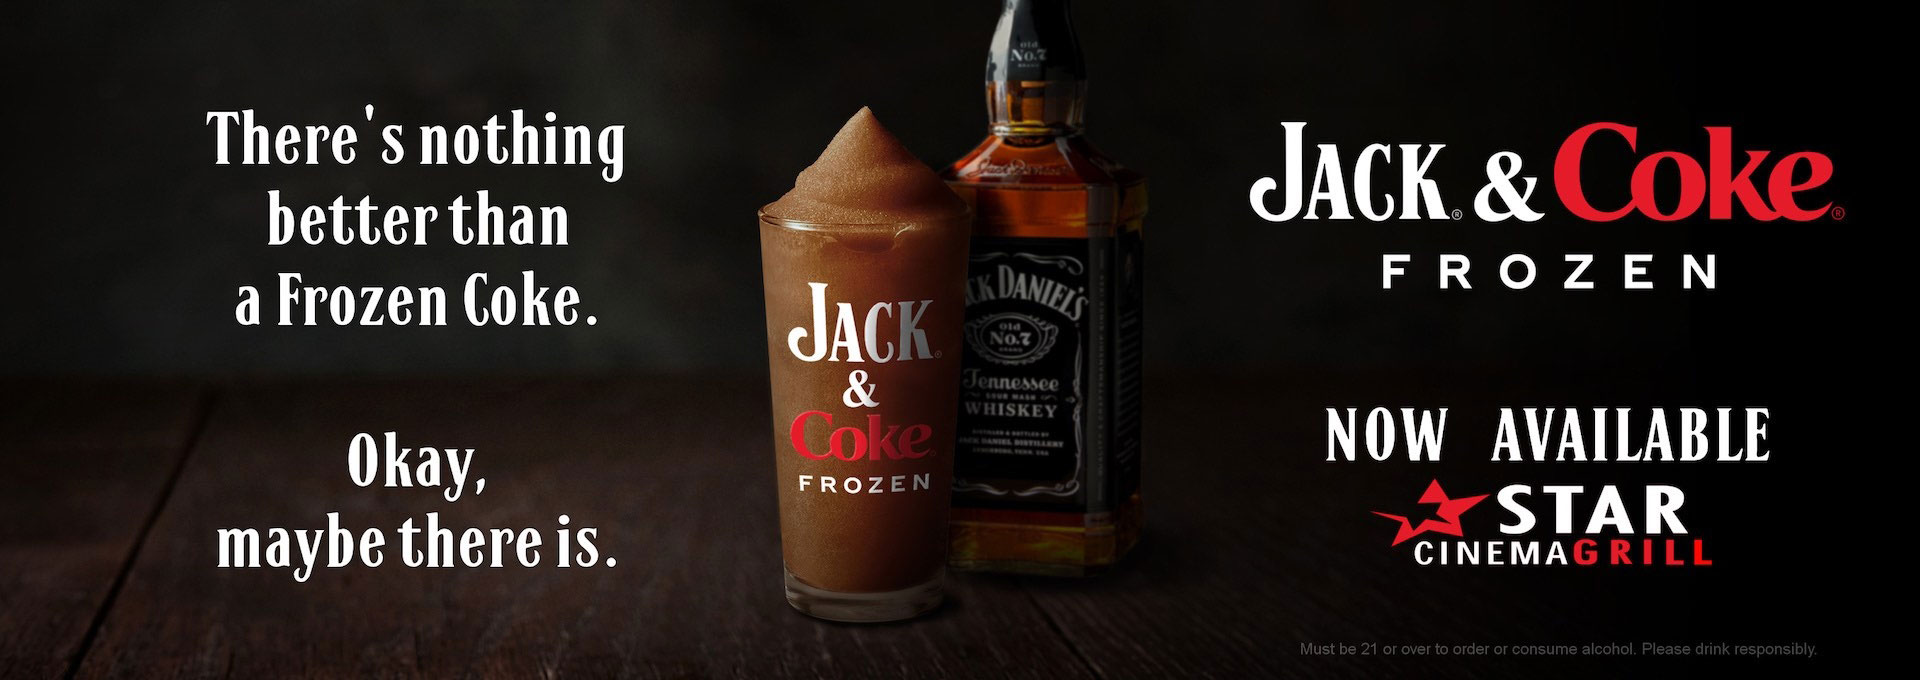 Jack and Coke image